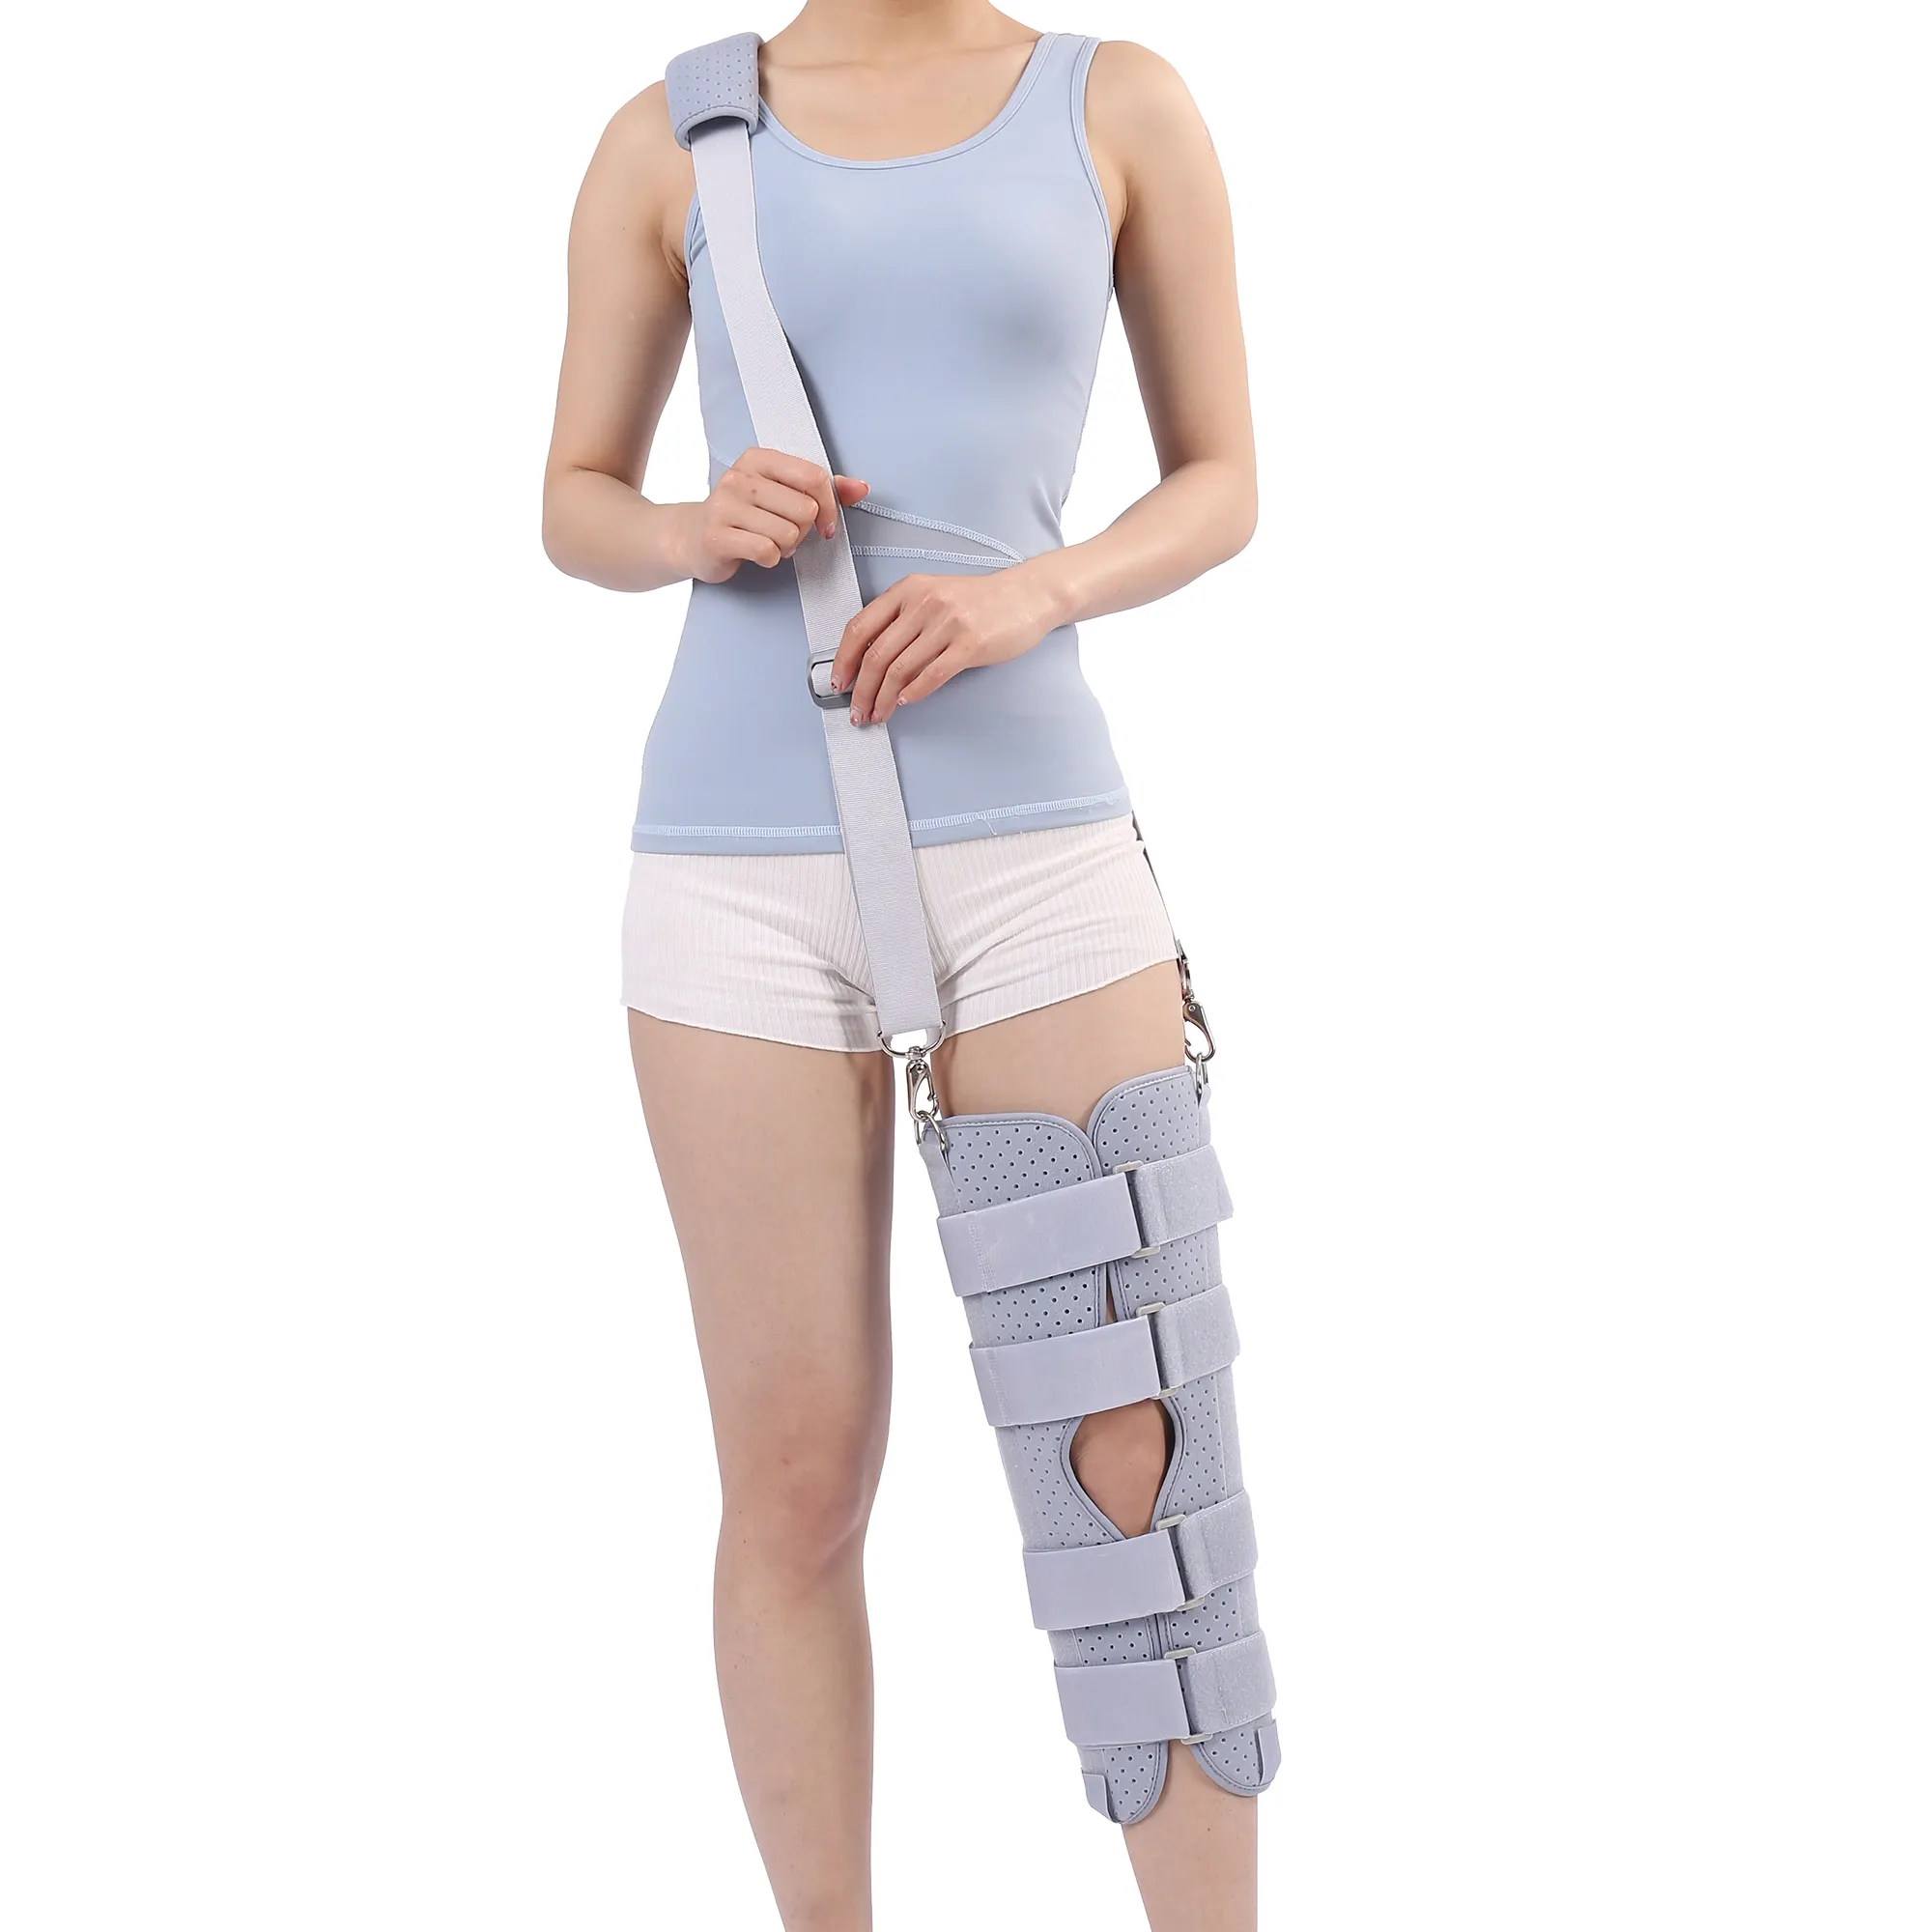 術後膝ブレース用の調整可能な装具ROMヒンジ付き膝サポート機能的膝サポート3mslisesスプリントCEISO13485